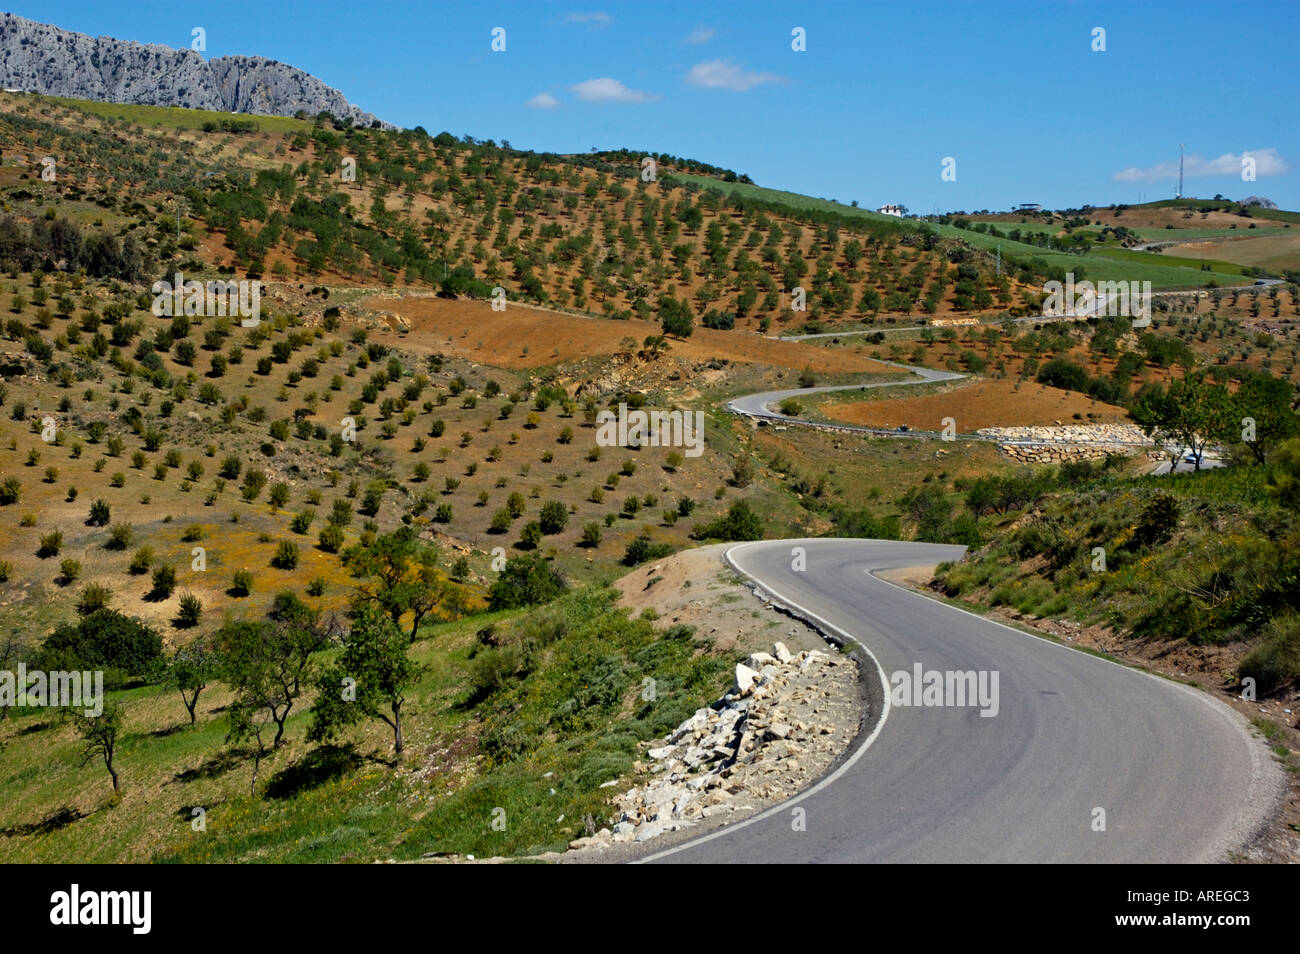 Andalusien, Spanien auf dem Land: Straße zwischen Felder mit Olivenbäumen, zwischen den Dörfern Alora und Antequera, Andalusien Stockfoto